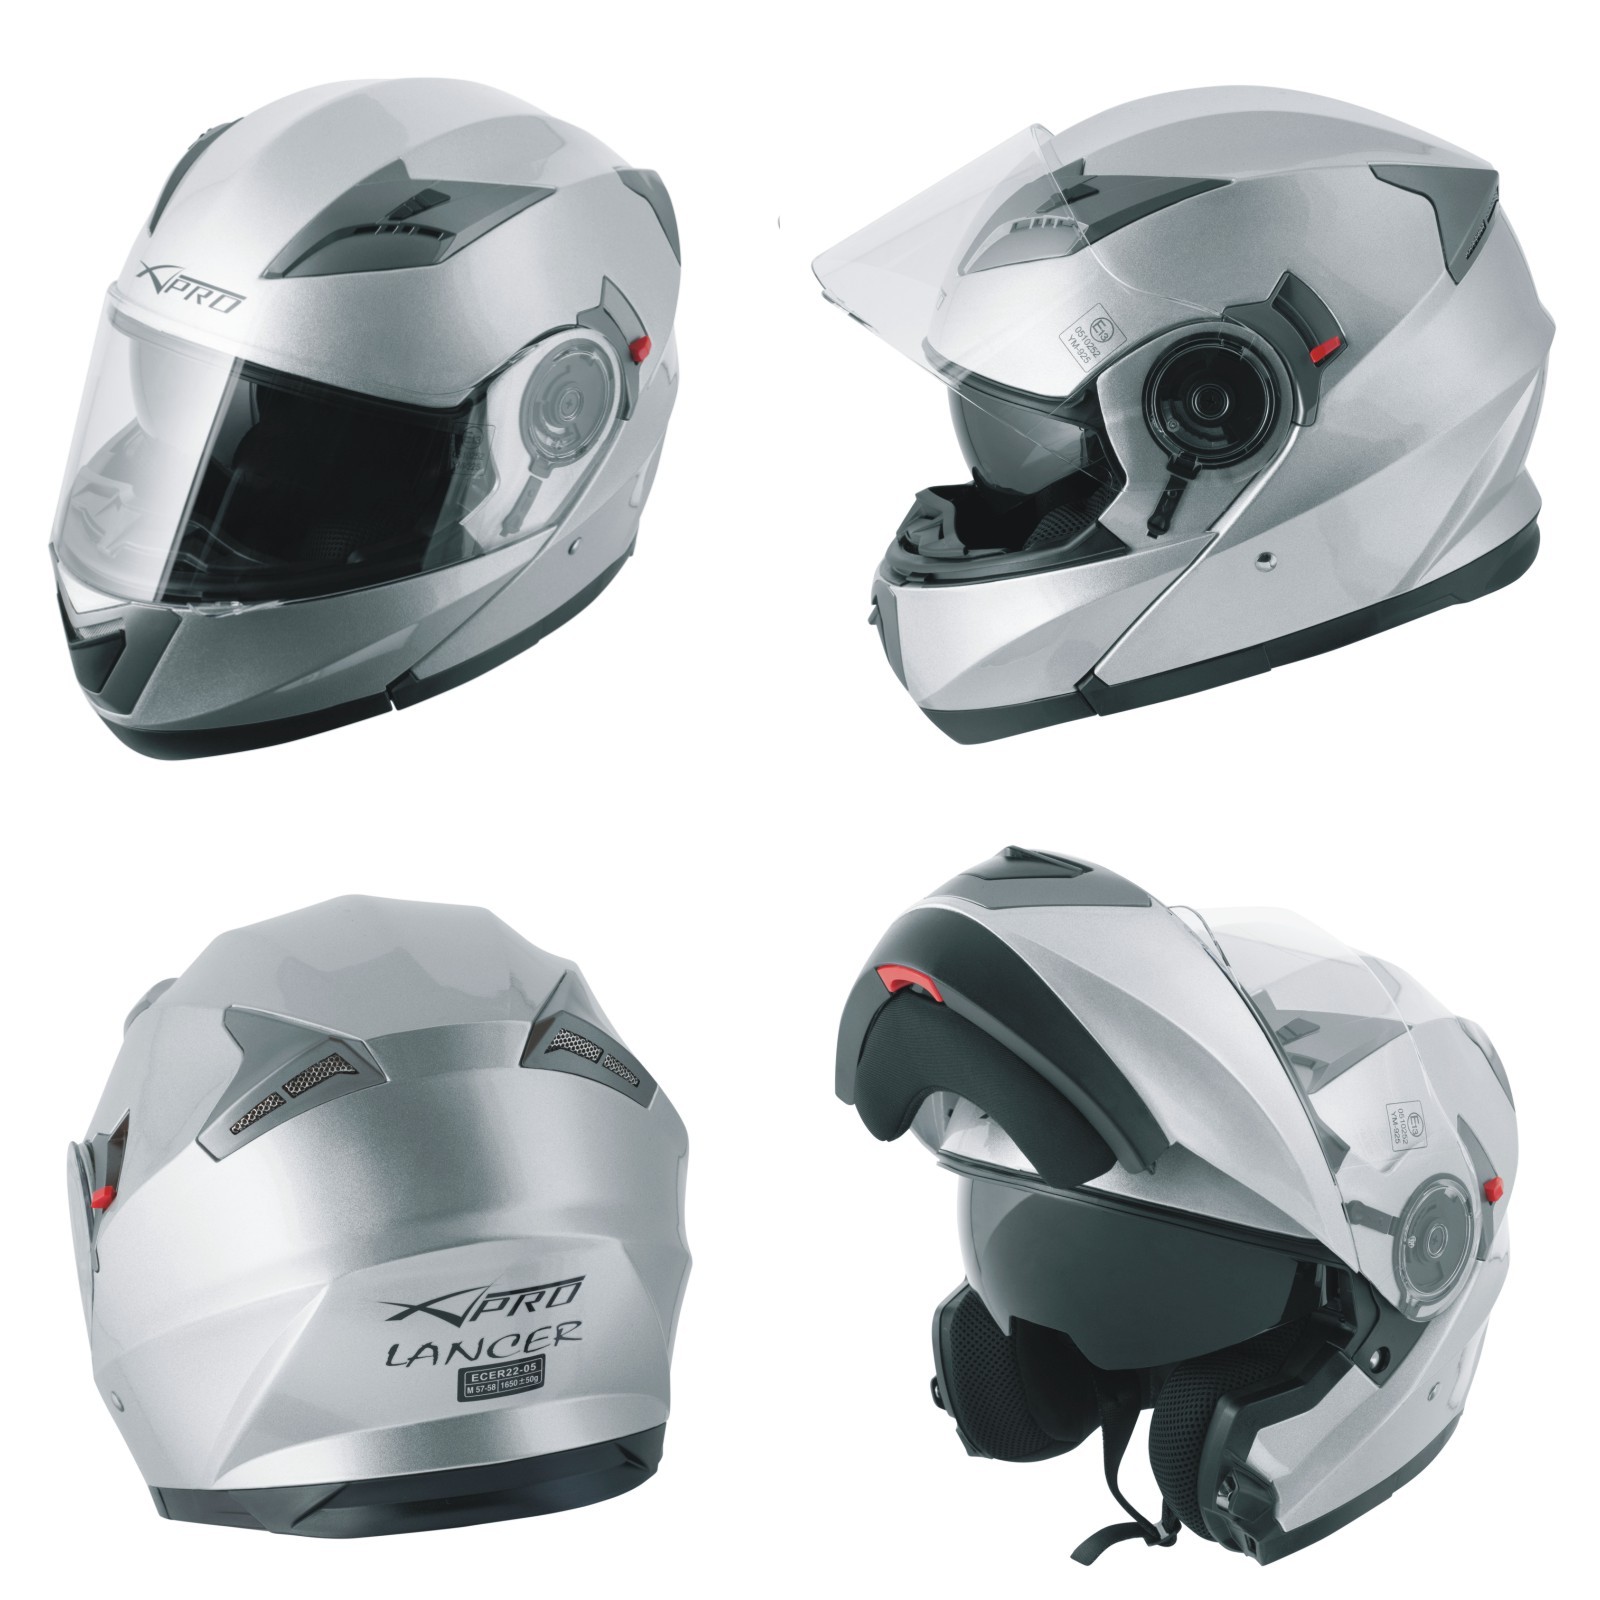 Abbigliamento Moto e Accessori - Casco Integrale Moto Scooter Visiera  Interna Parasole Touring